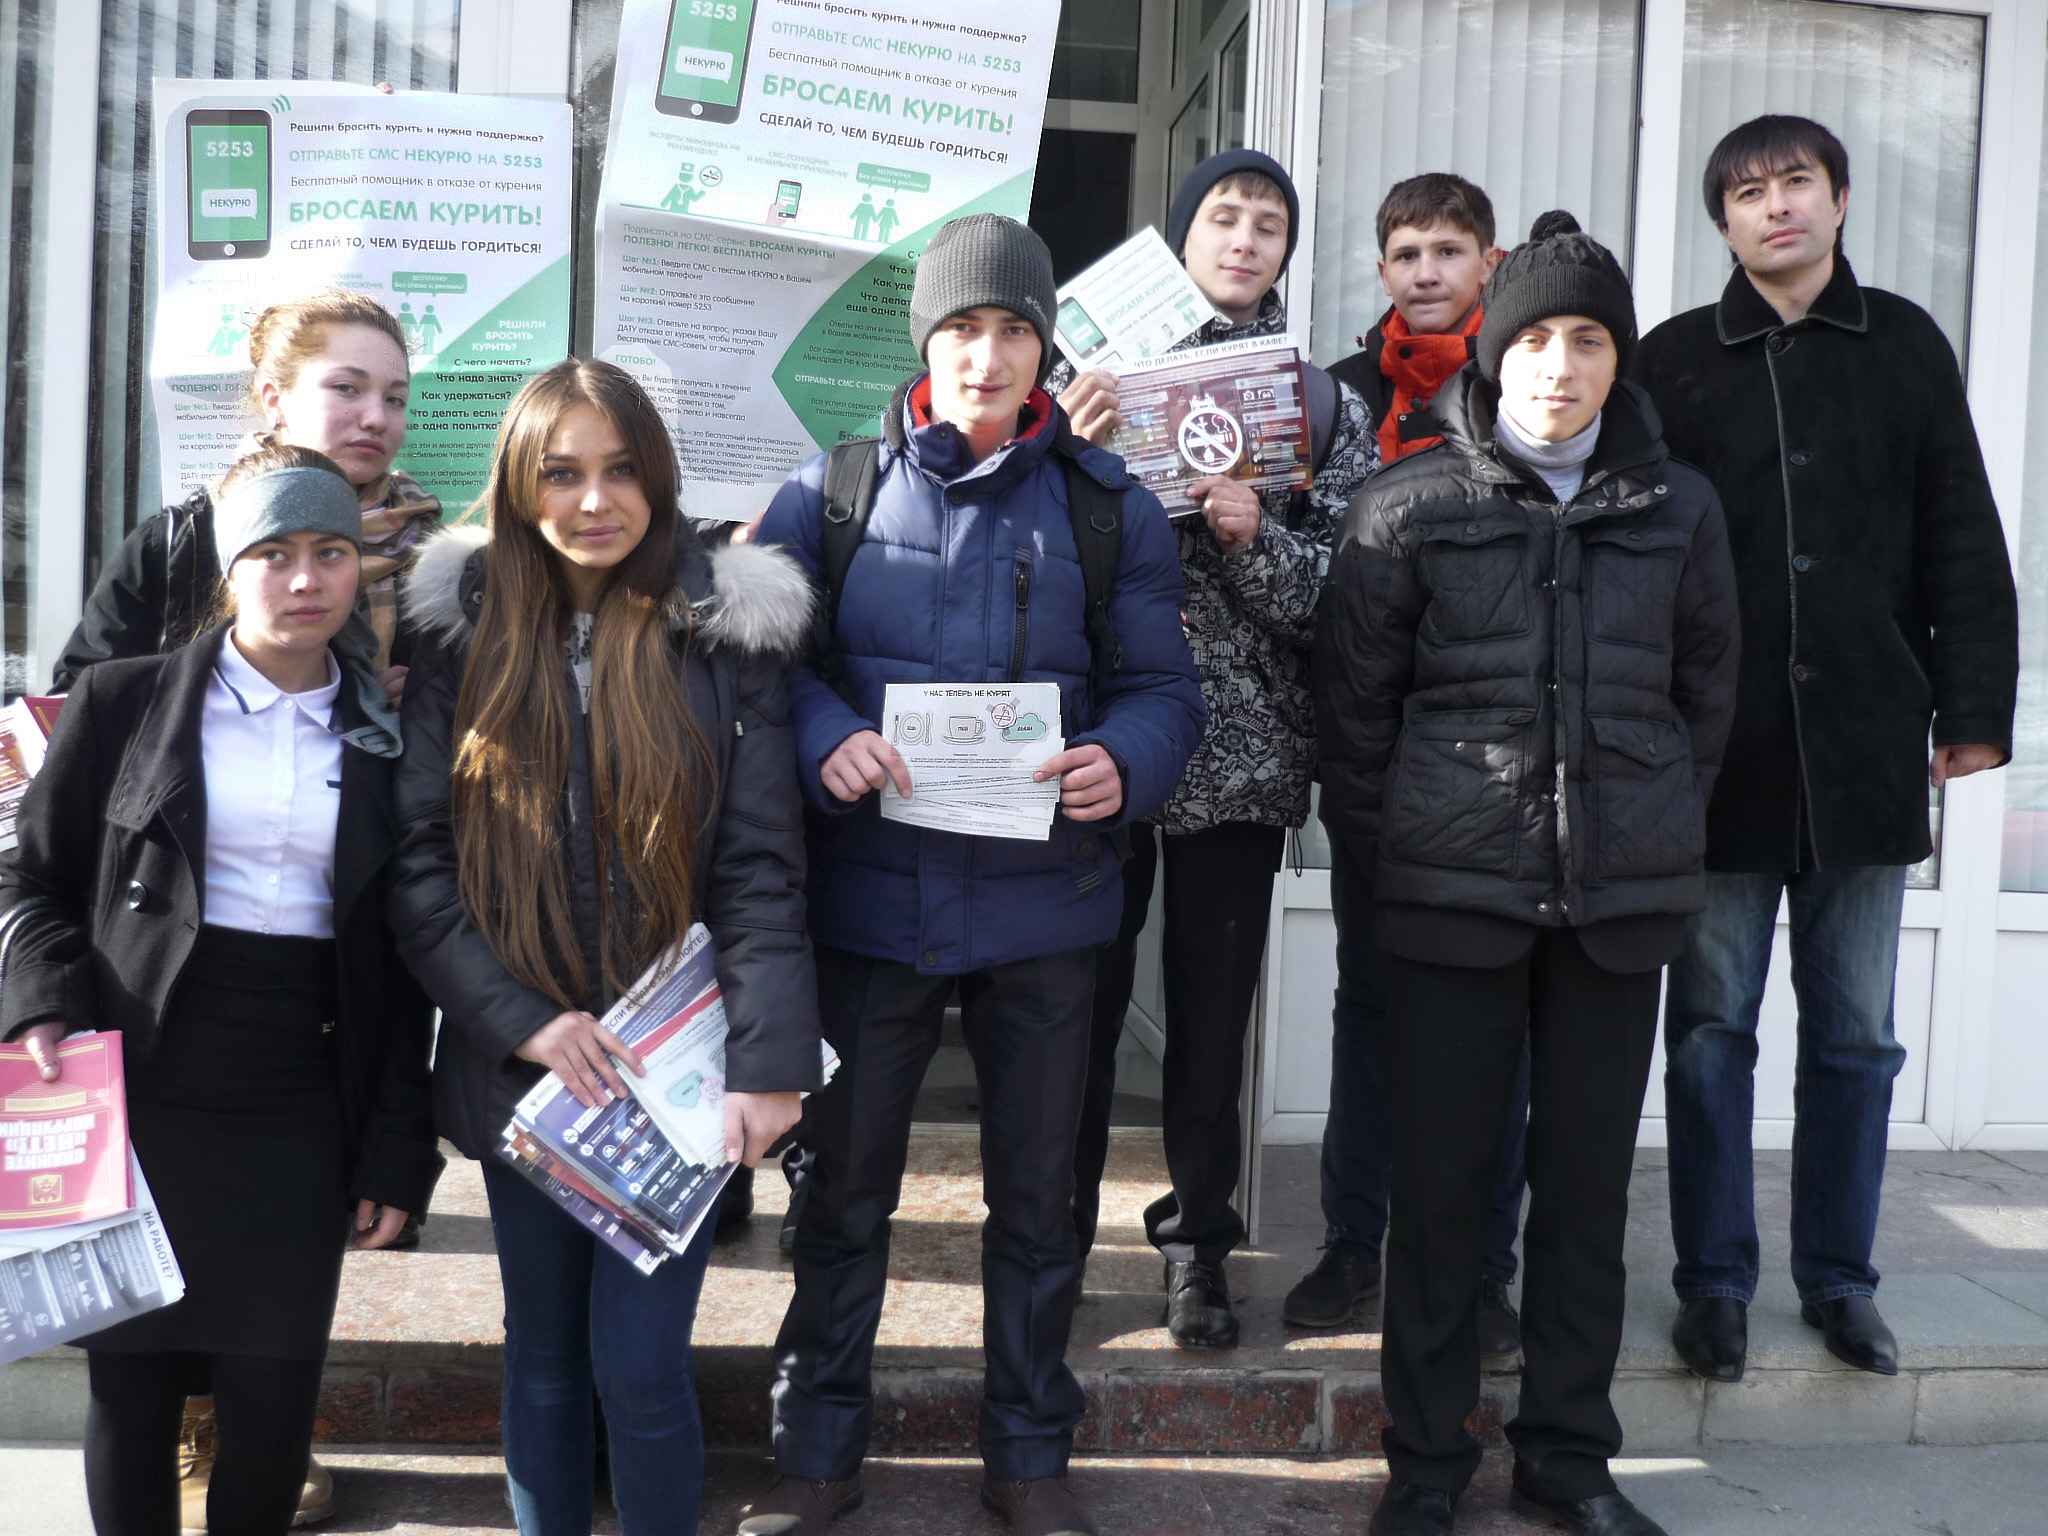 Молодежь Эльбрусского района пропагандирует борьбу с коррупцией